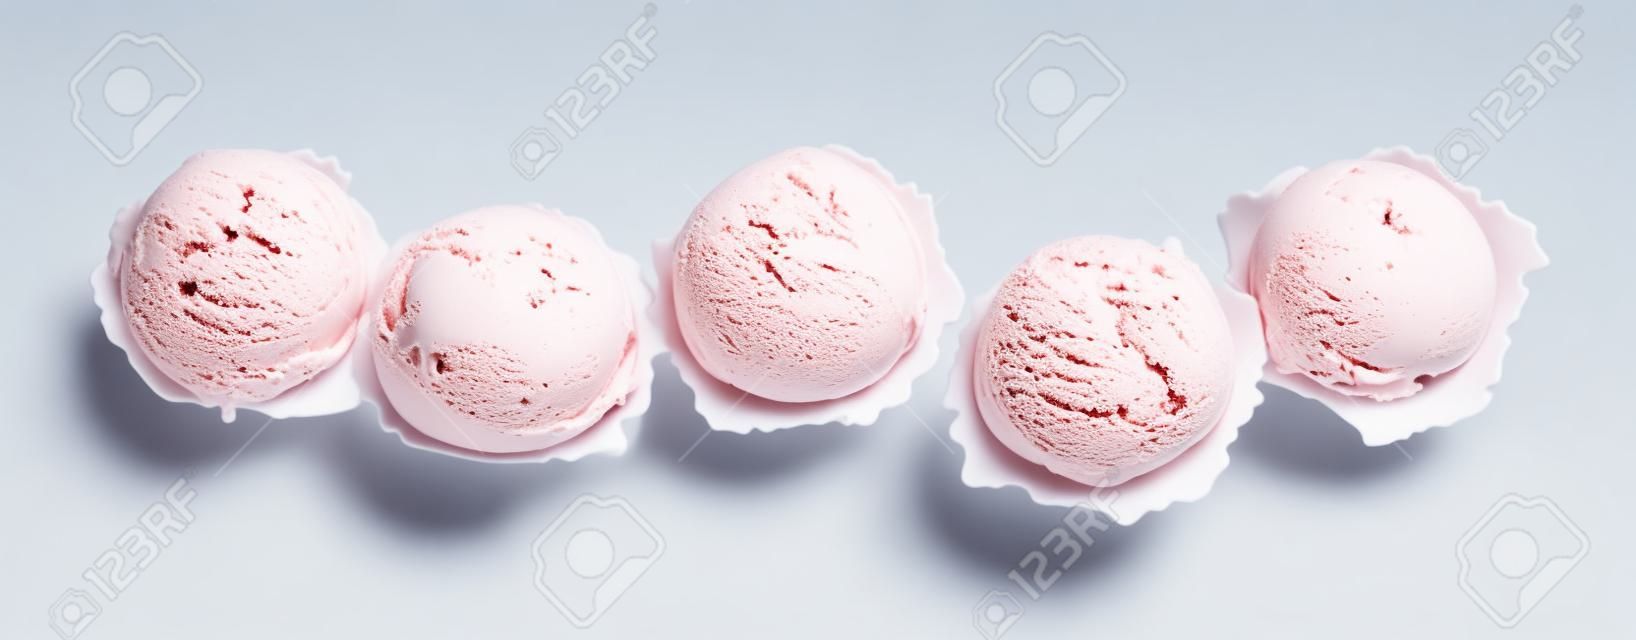 High Angle Натюрморт Вид Пять совкамих Красочного и Refreshingly Прохладного мороженого перед белым фоном